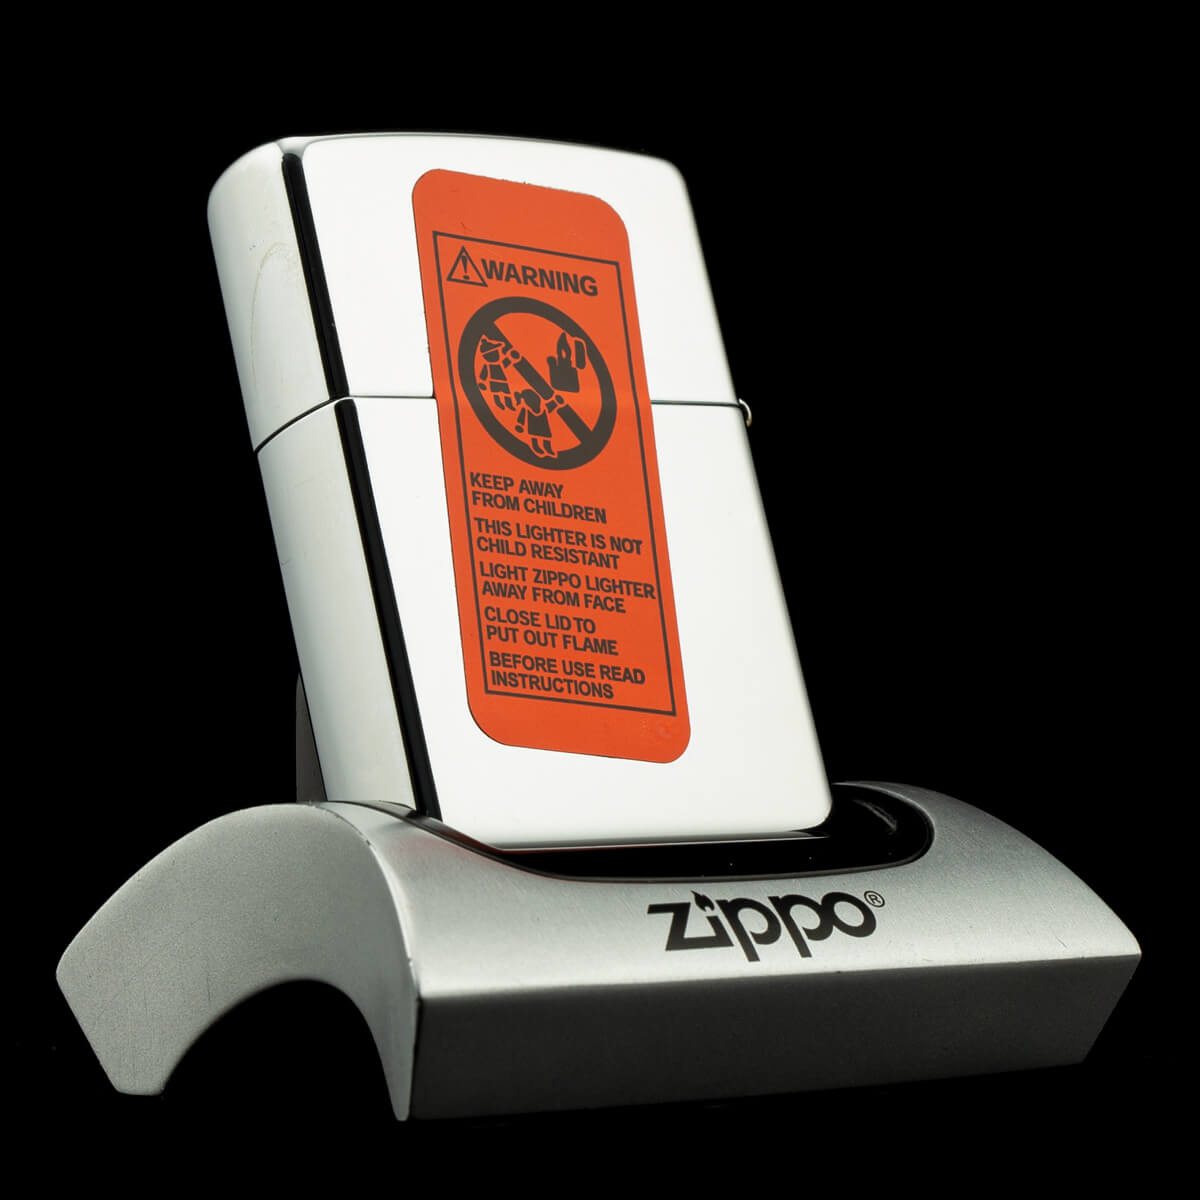 Zippo CLICK 2003